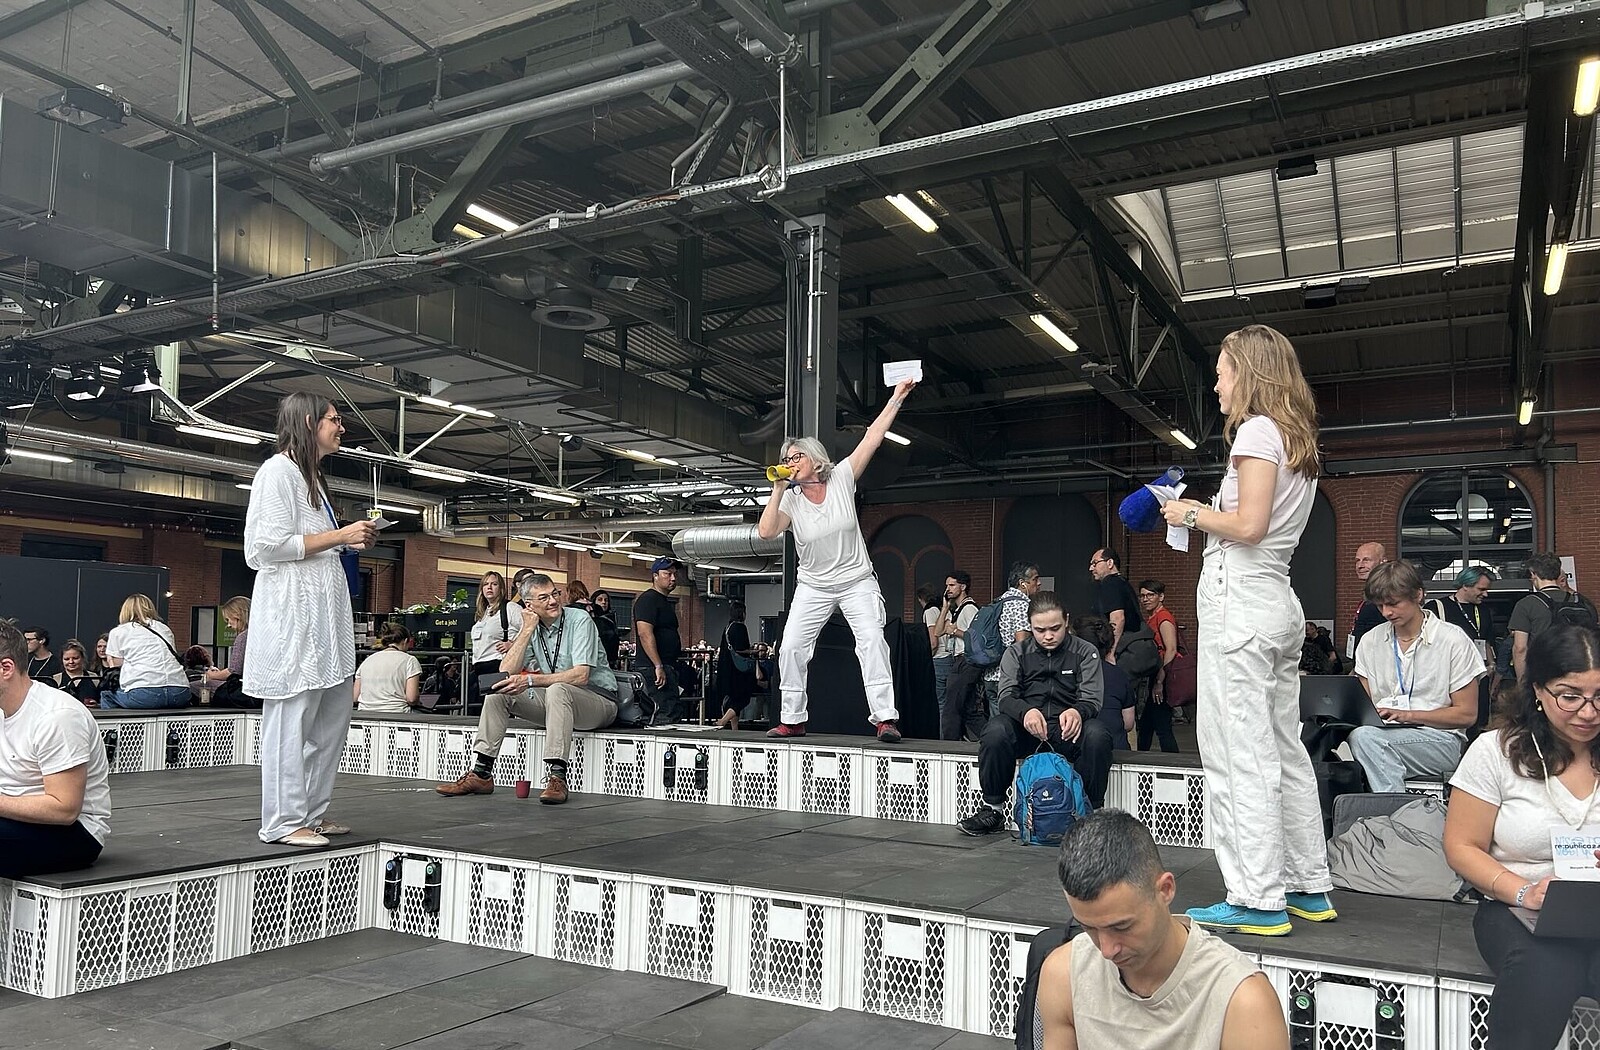 Drei Frauen in Weiß gekleidet stehen in der Meetup-Zone der re:publica-Konferenz. Eine von ihnen hat die Hand zum Himmel gestreckt und ruft etwas.